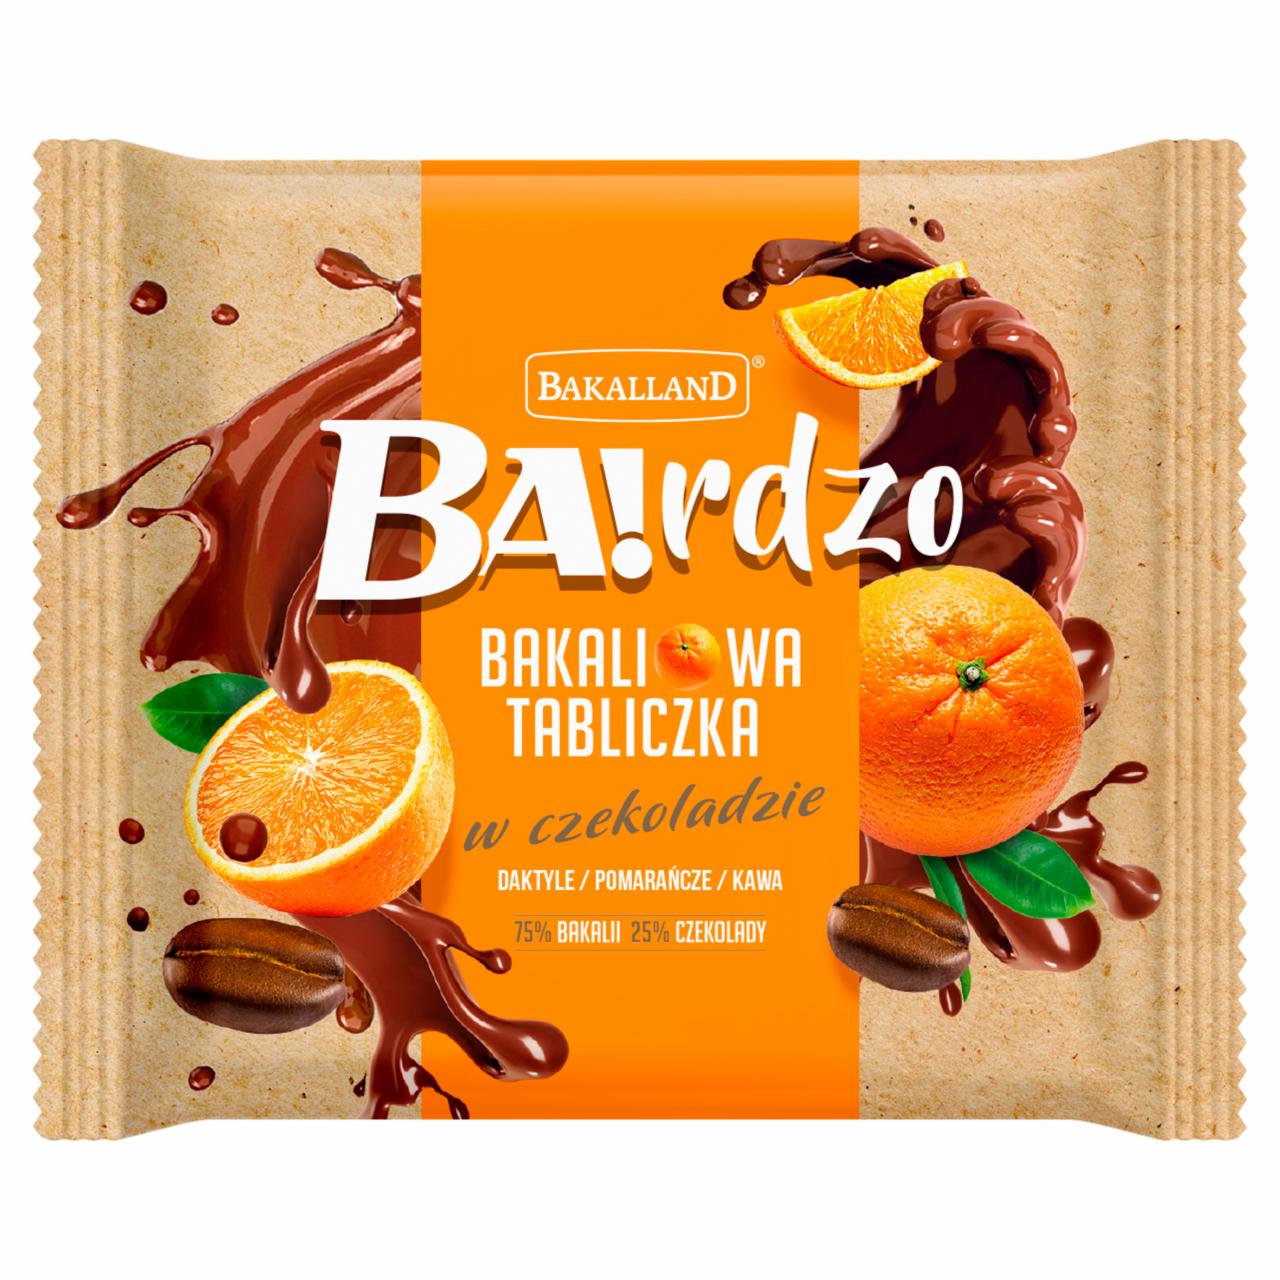 Zdjęcia - Bakalland Ba!rdzo Bakaliowa tabliczka w czekoladzie daktyle pomarańcze kawa 65 g